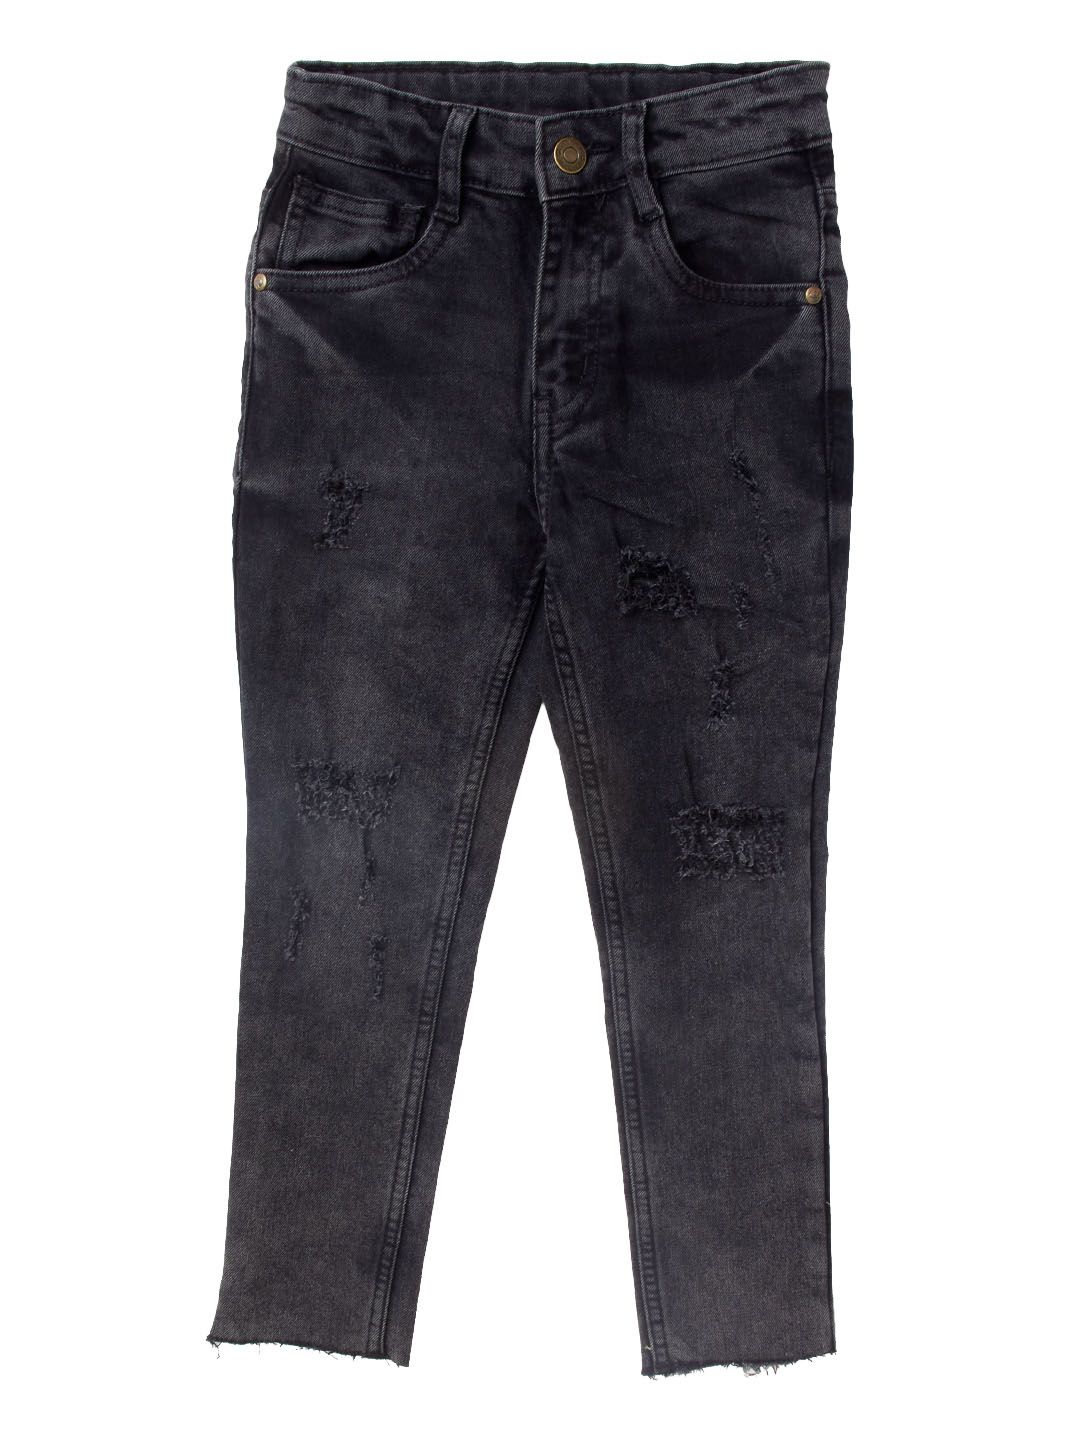 Jeans Zara Mode Jeans 7/8 Jeans 